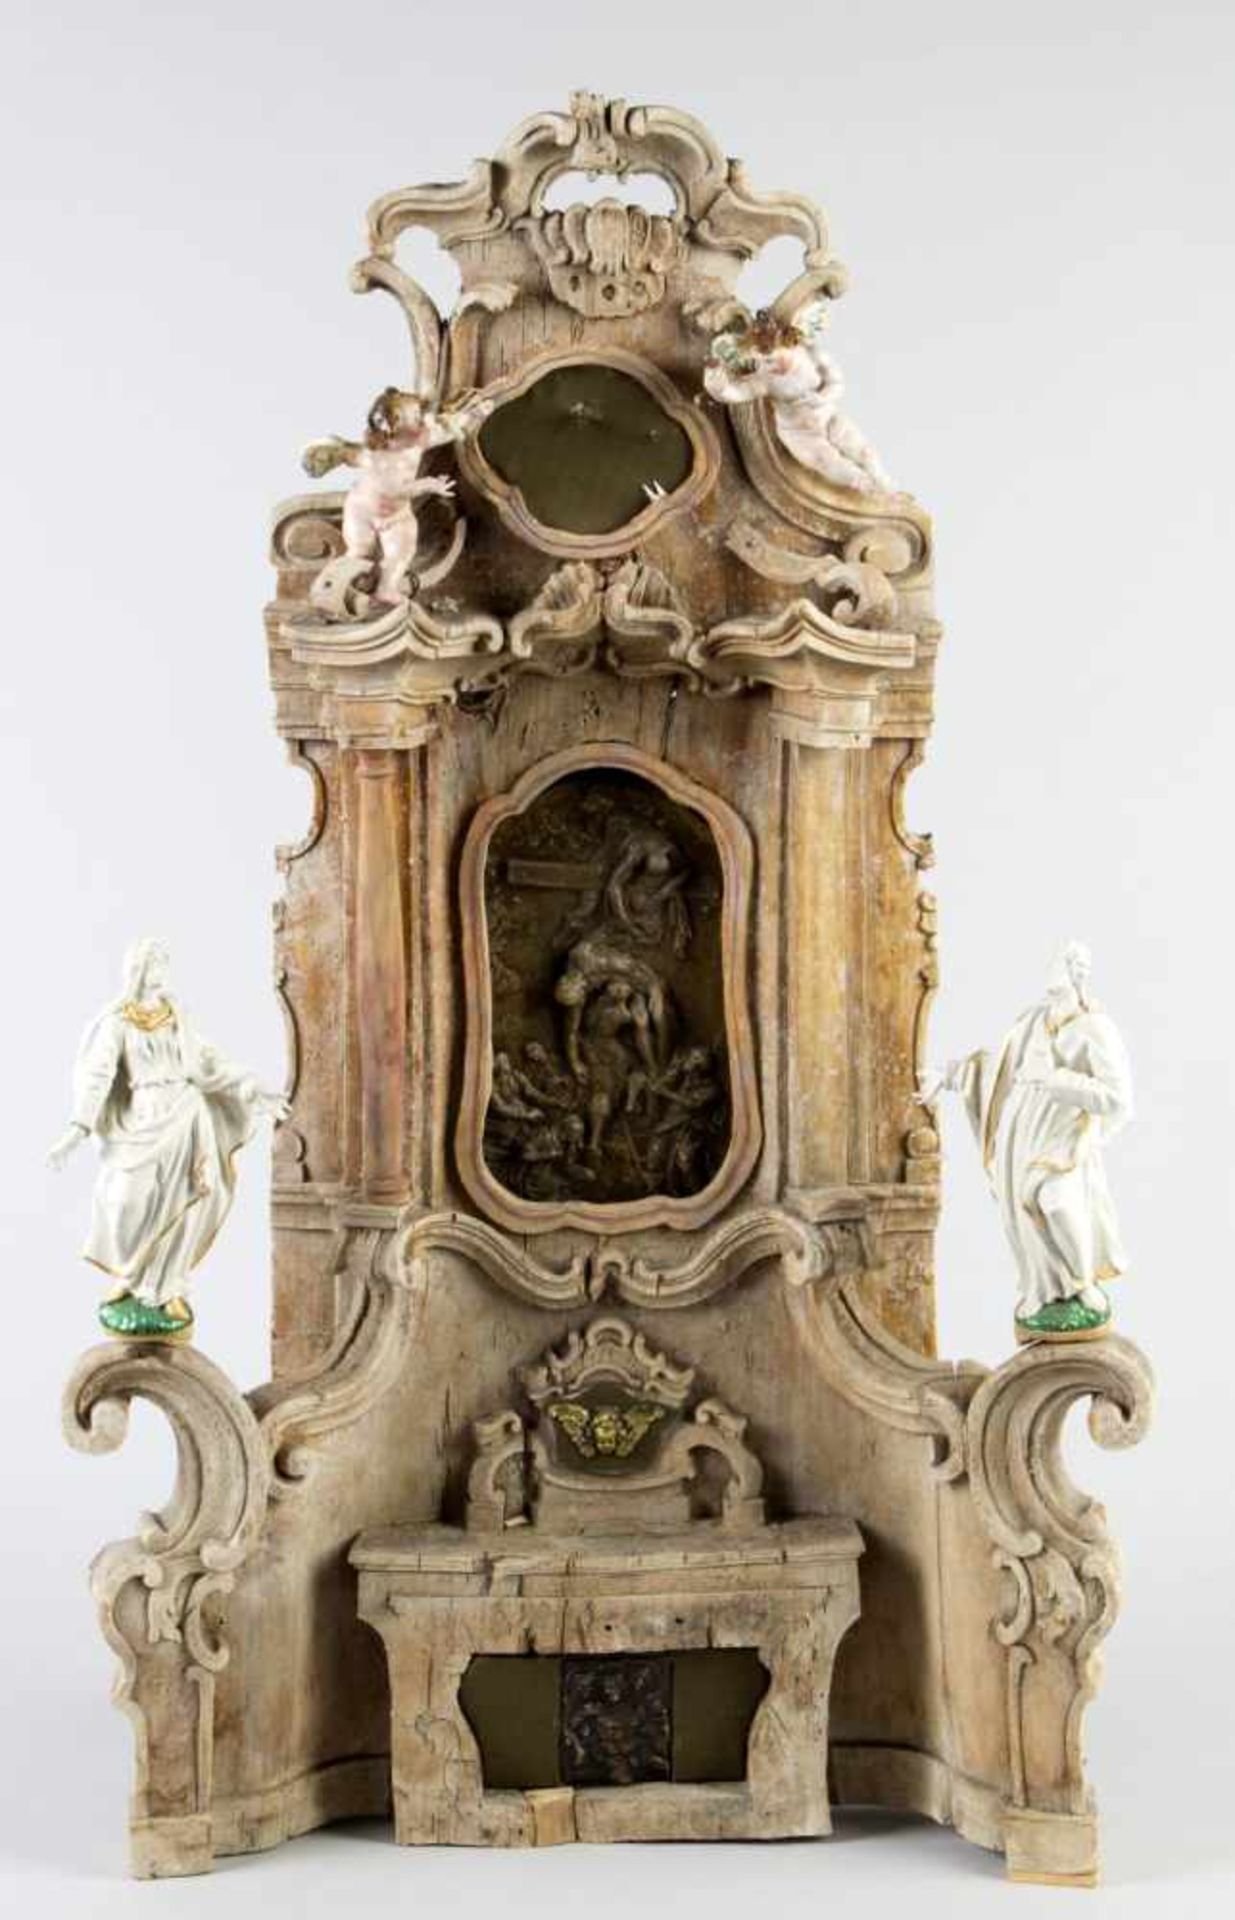 Kleiner AltarHolz, geschnitzt. Schnitzwerk aus C-Spangen und Voluten mit Säulenarchitektur. Mittig